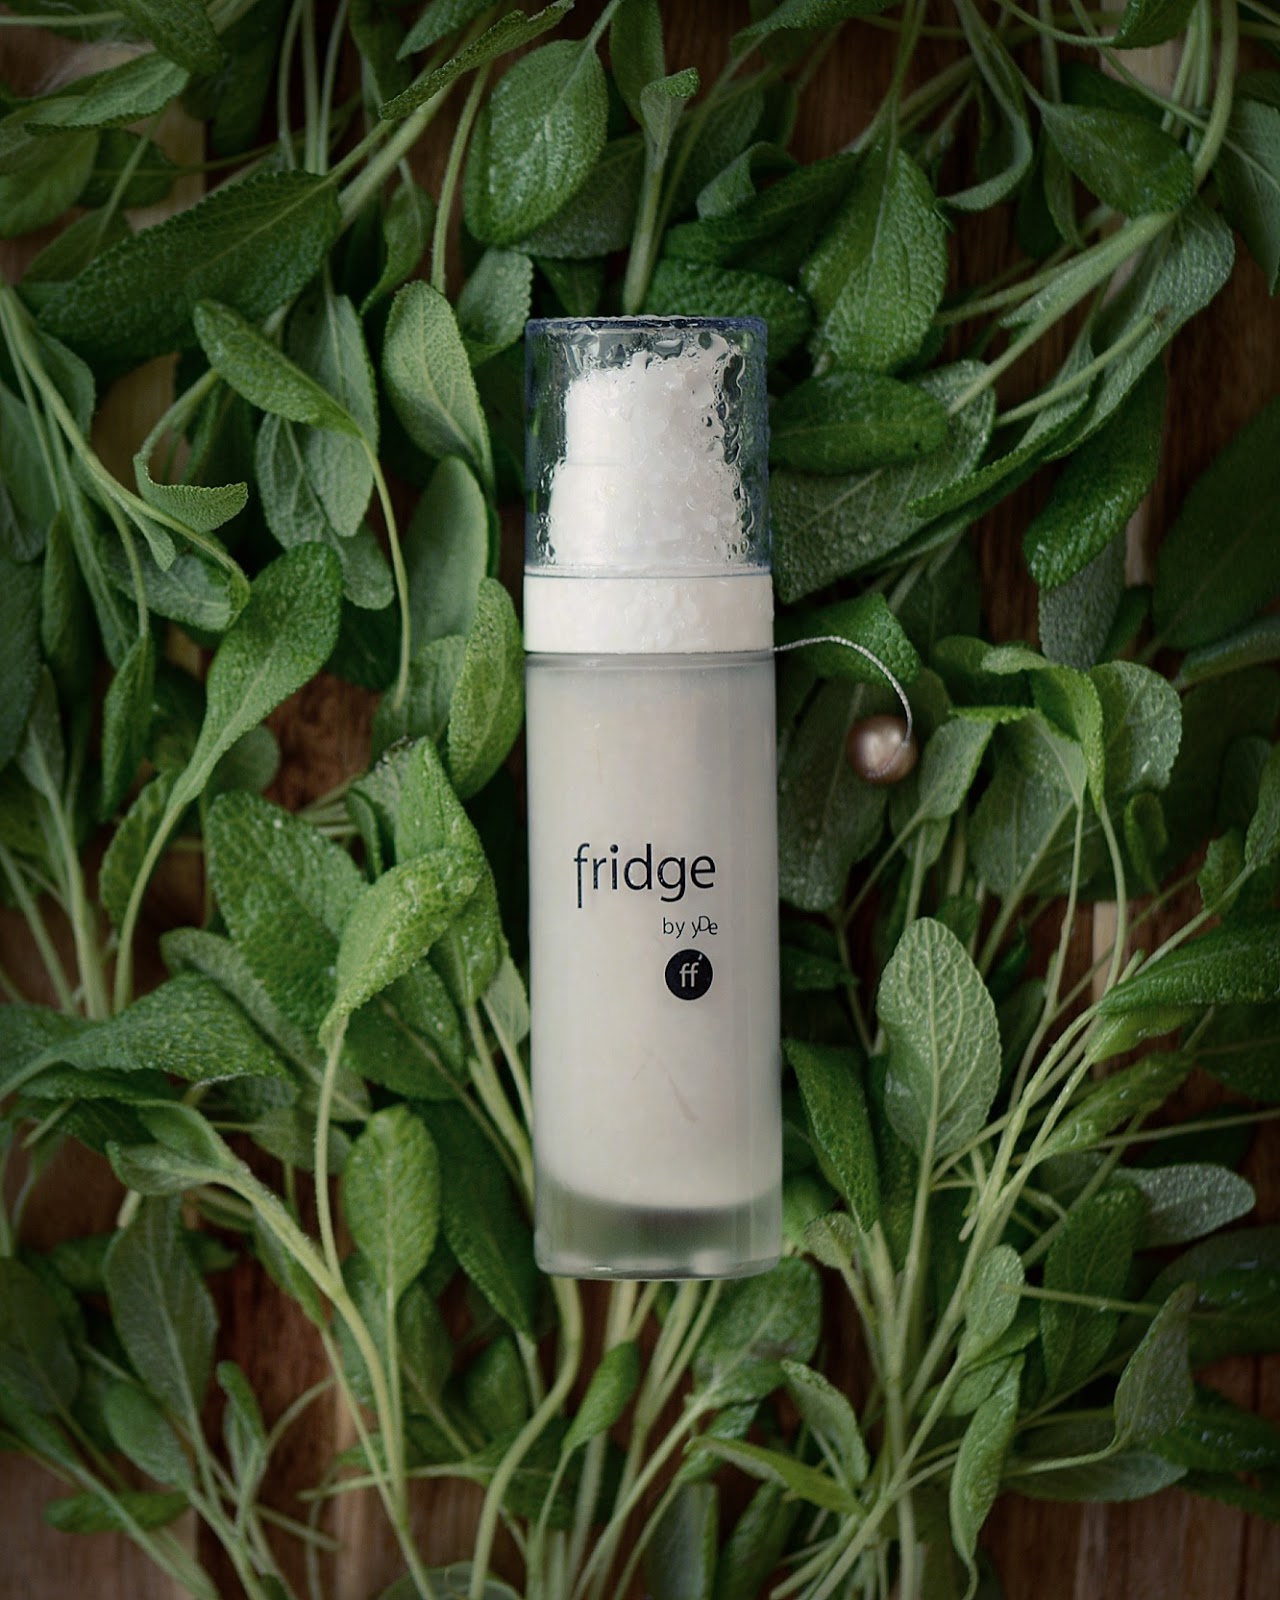 fridge ff fabolous face naturalny krem bb krey z lodówki świeże kremy do twarzy naturalny makijaż naturalne składniki organicnzy krem do twarzy